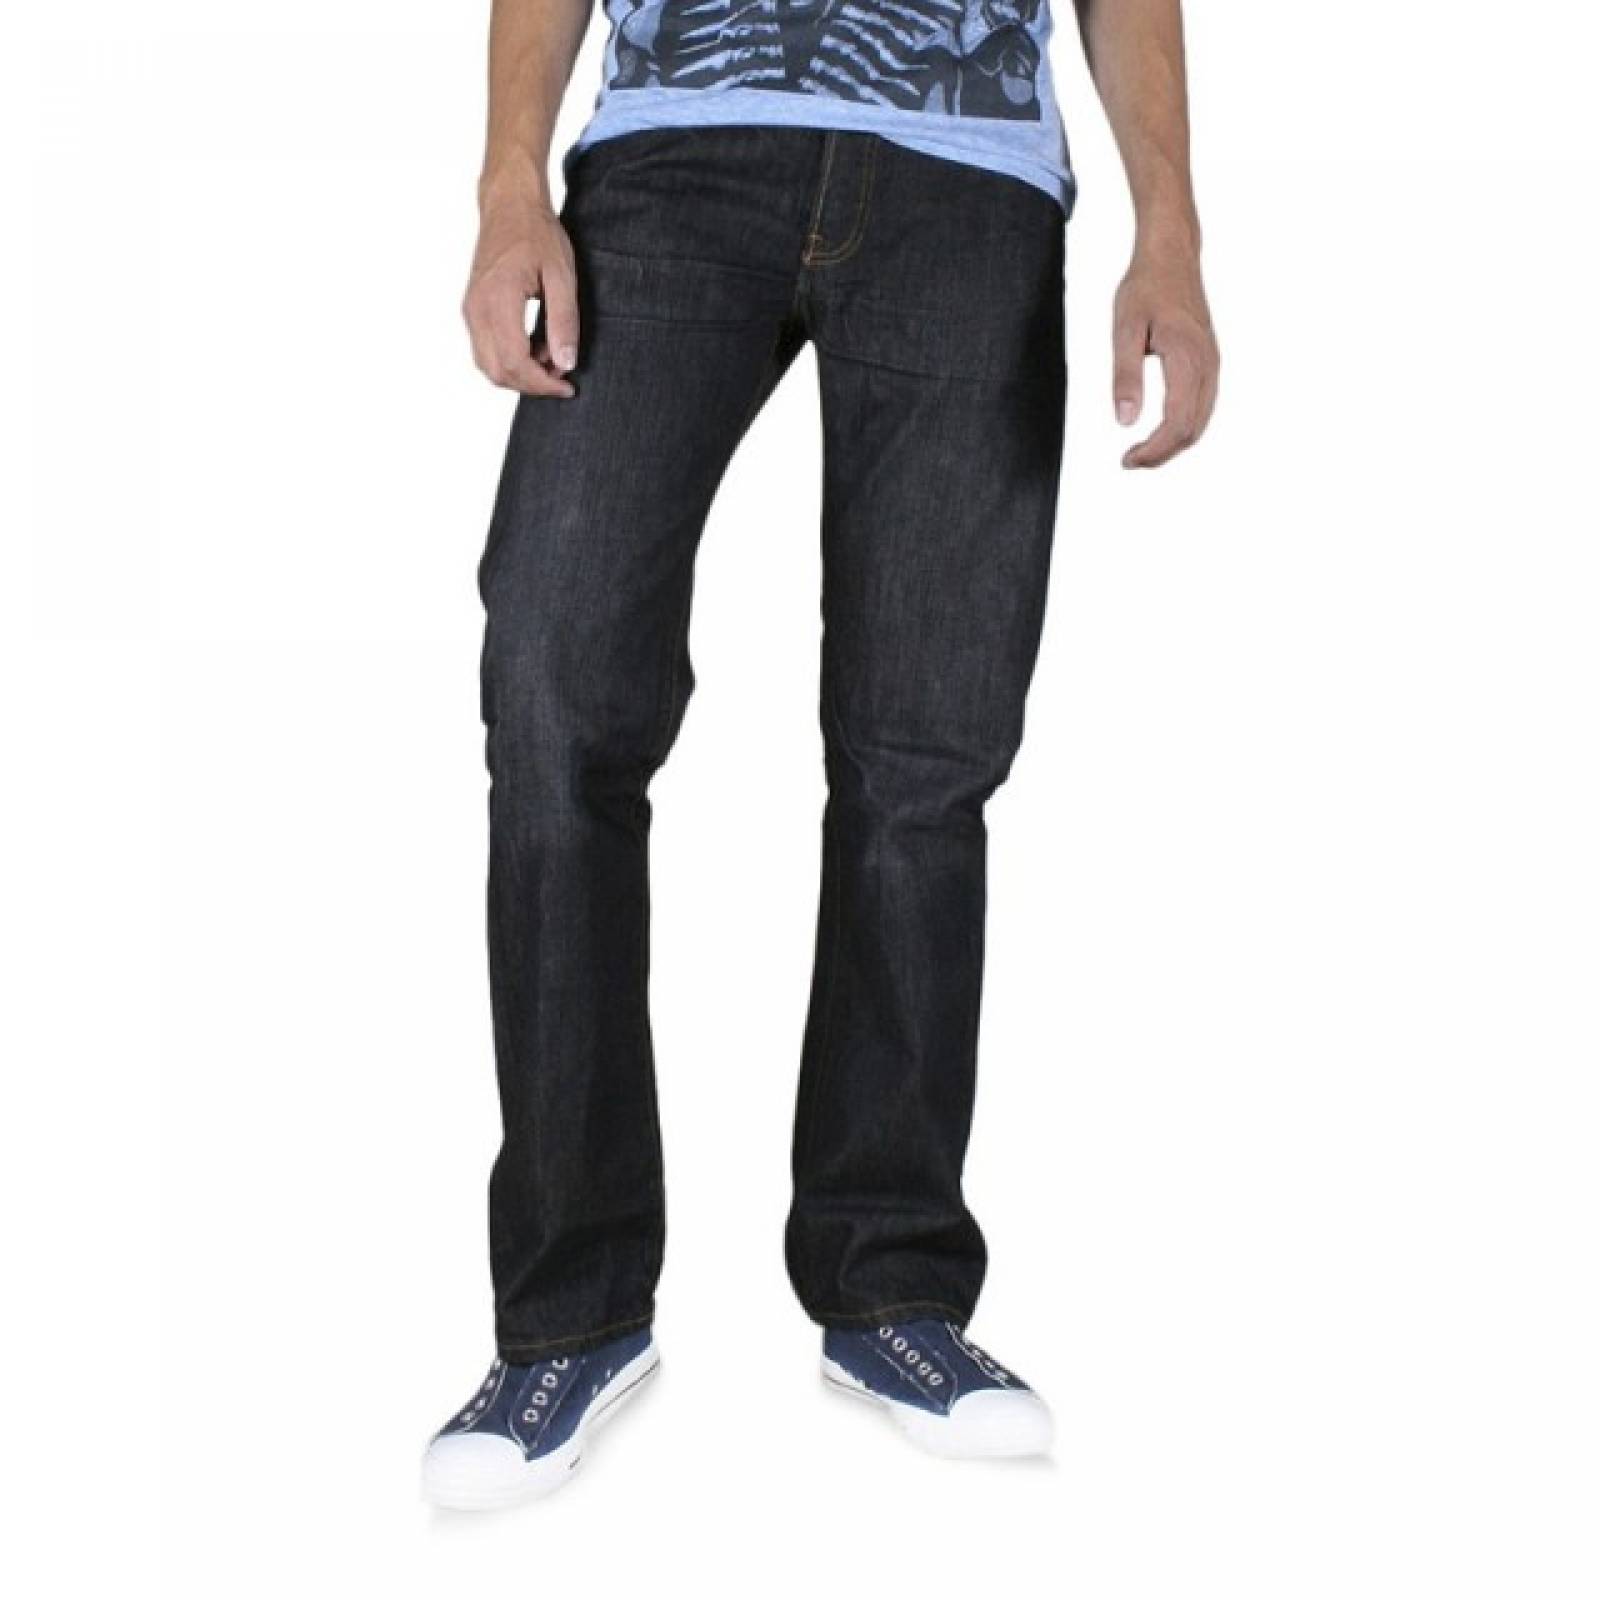 Jeans Levis 501 Original Fit 005015808